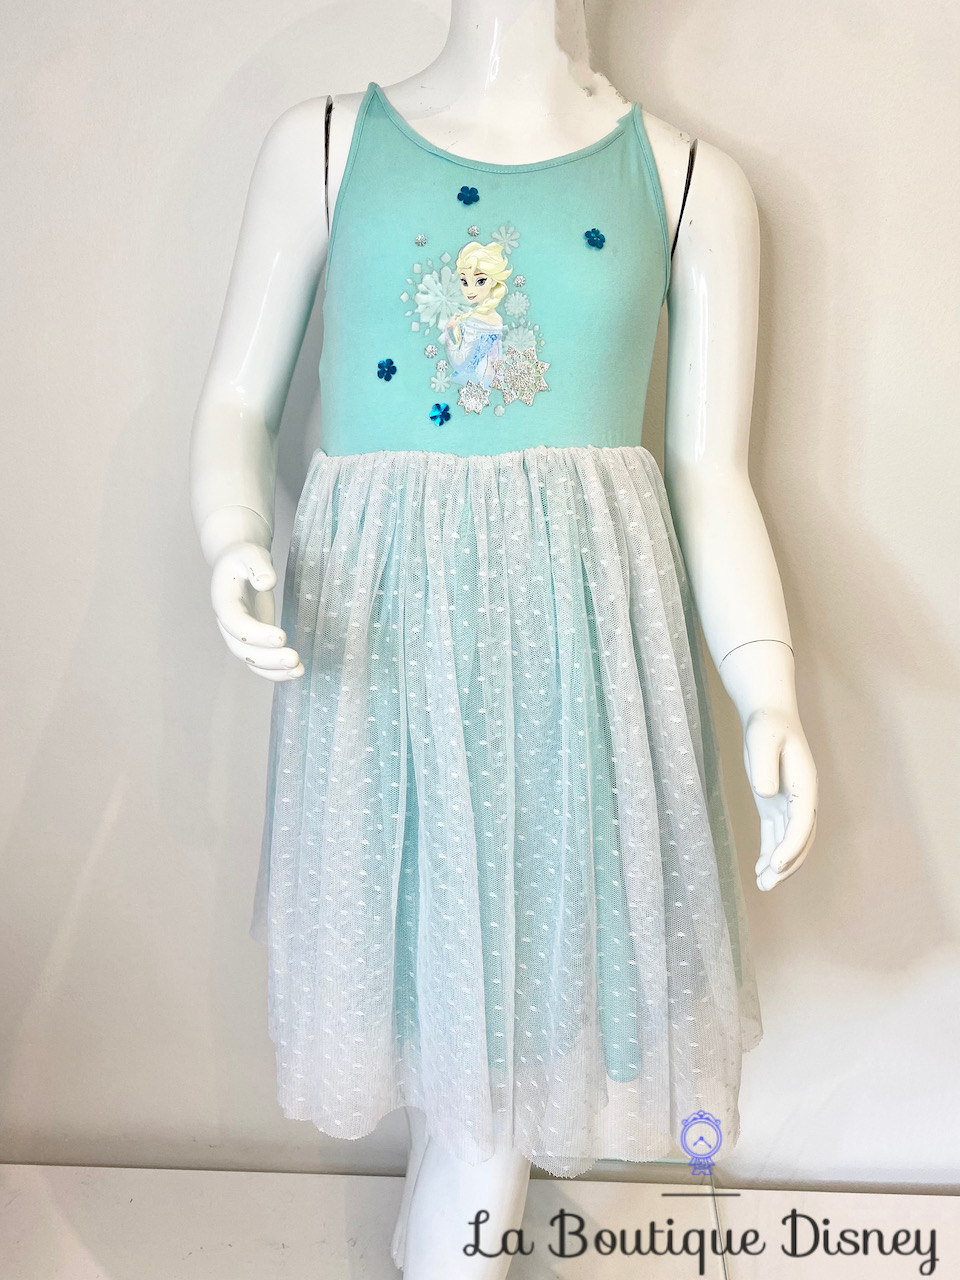 Déguisement - Costume Disney - La Reine des Neiges - Elsa - 7/8 ans